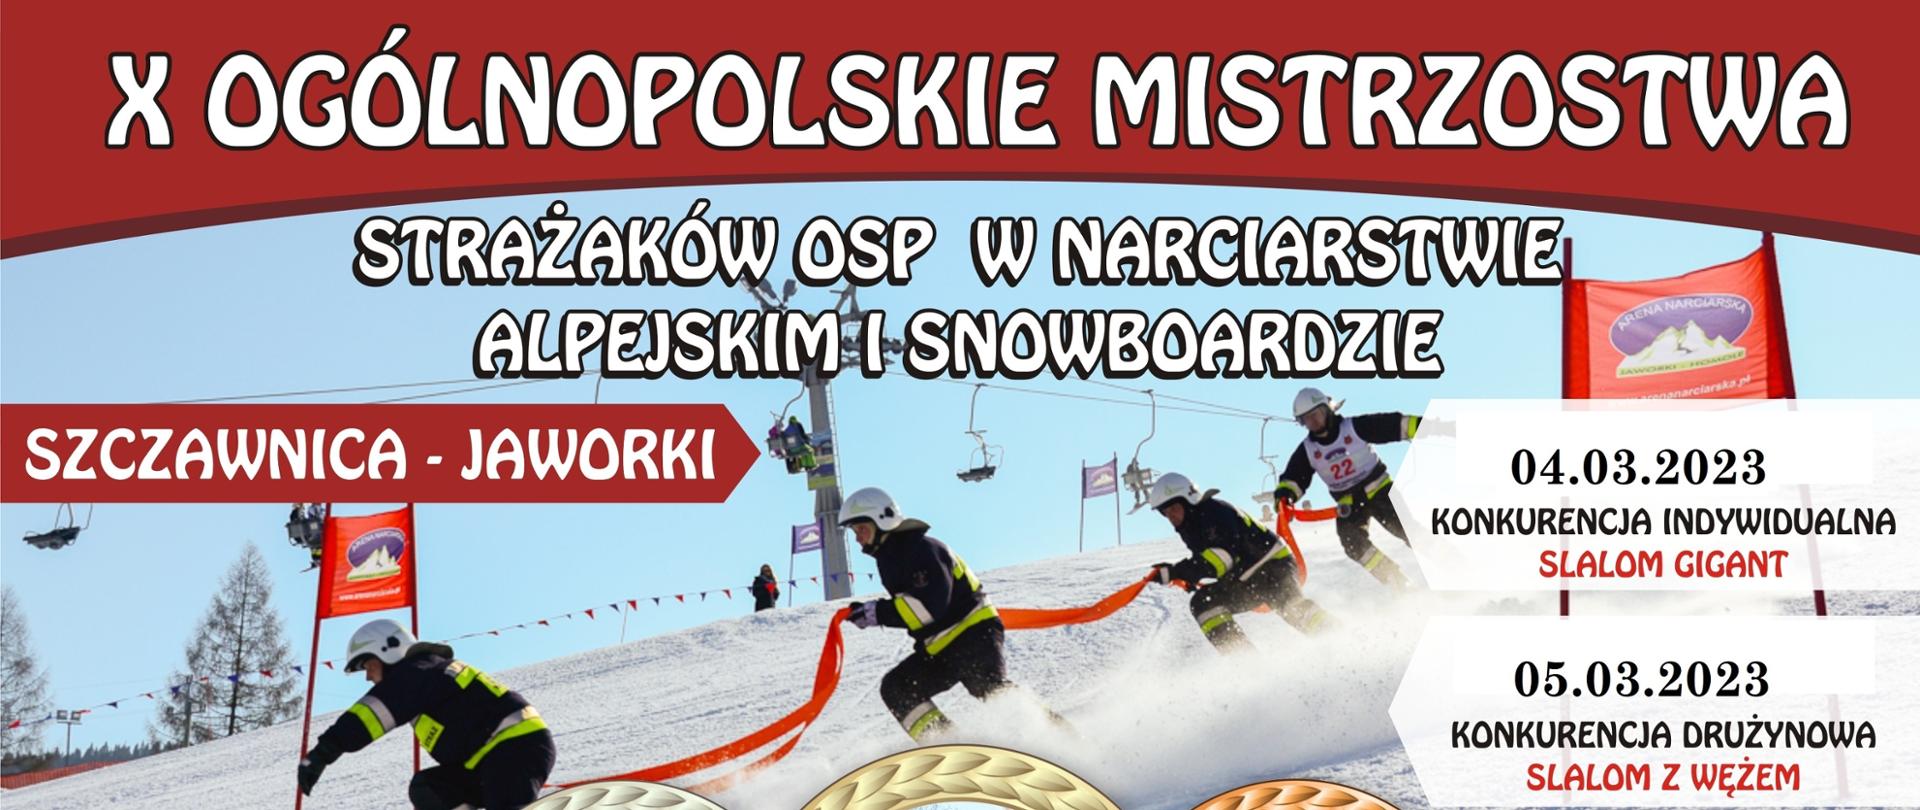 Zdjęcie strażaków OSP podczas zjeżdżania na nartach w zawodach